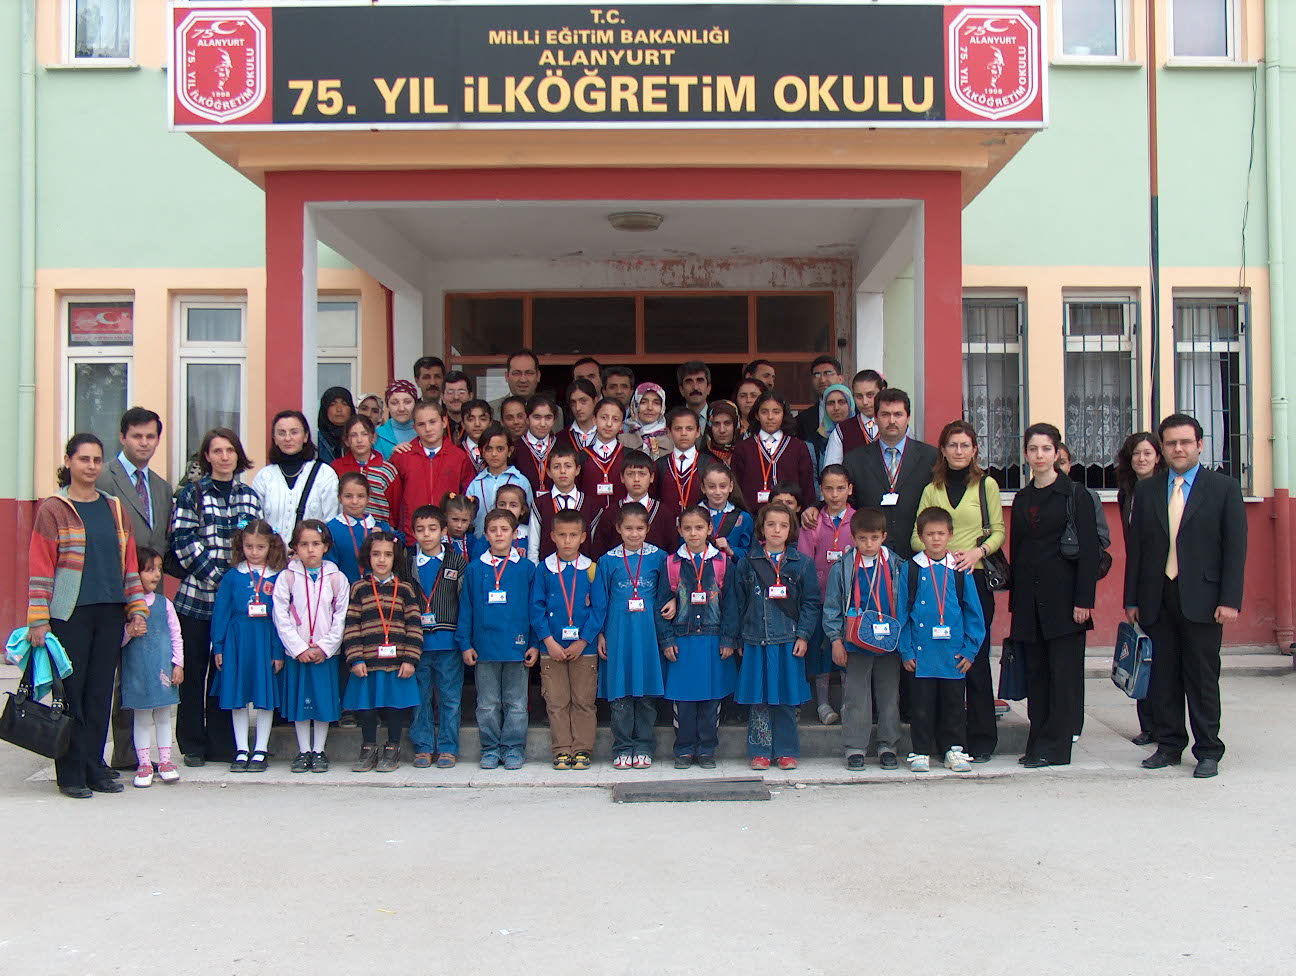 Genç Gazete İnegöl'de Adına Yakışır 75 Proje Üreten Okul Rekor Kırdı   (1)